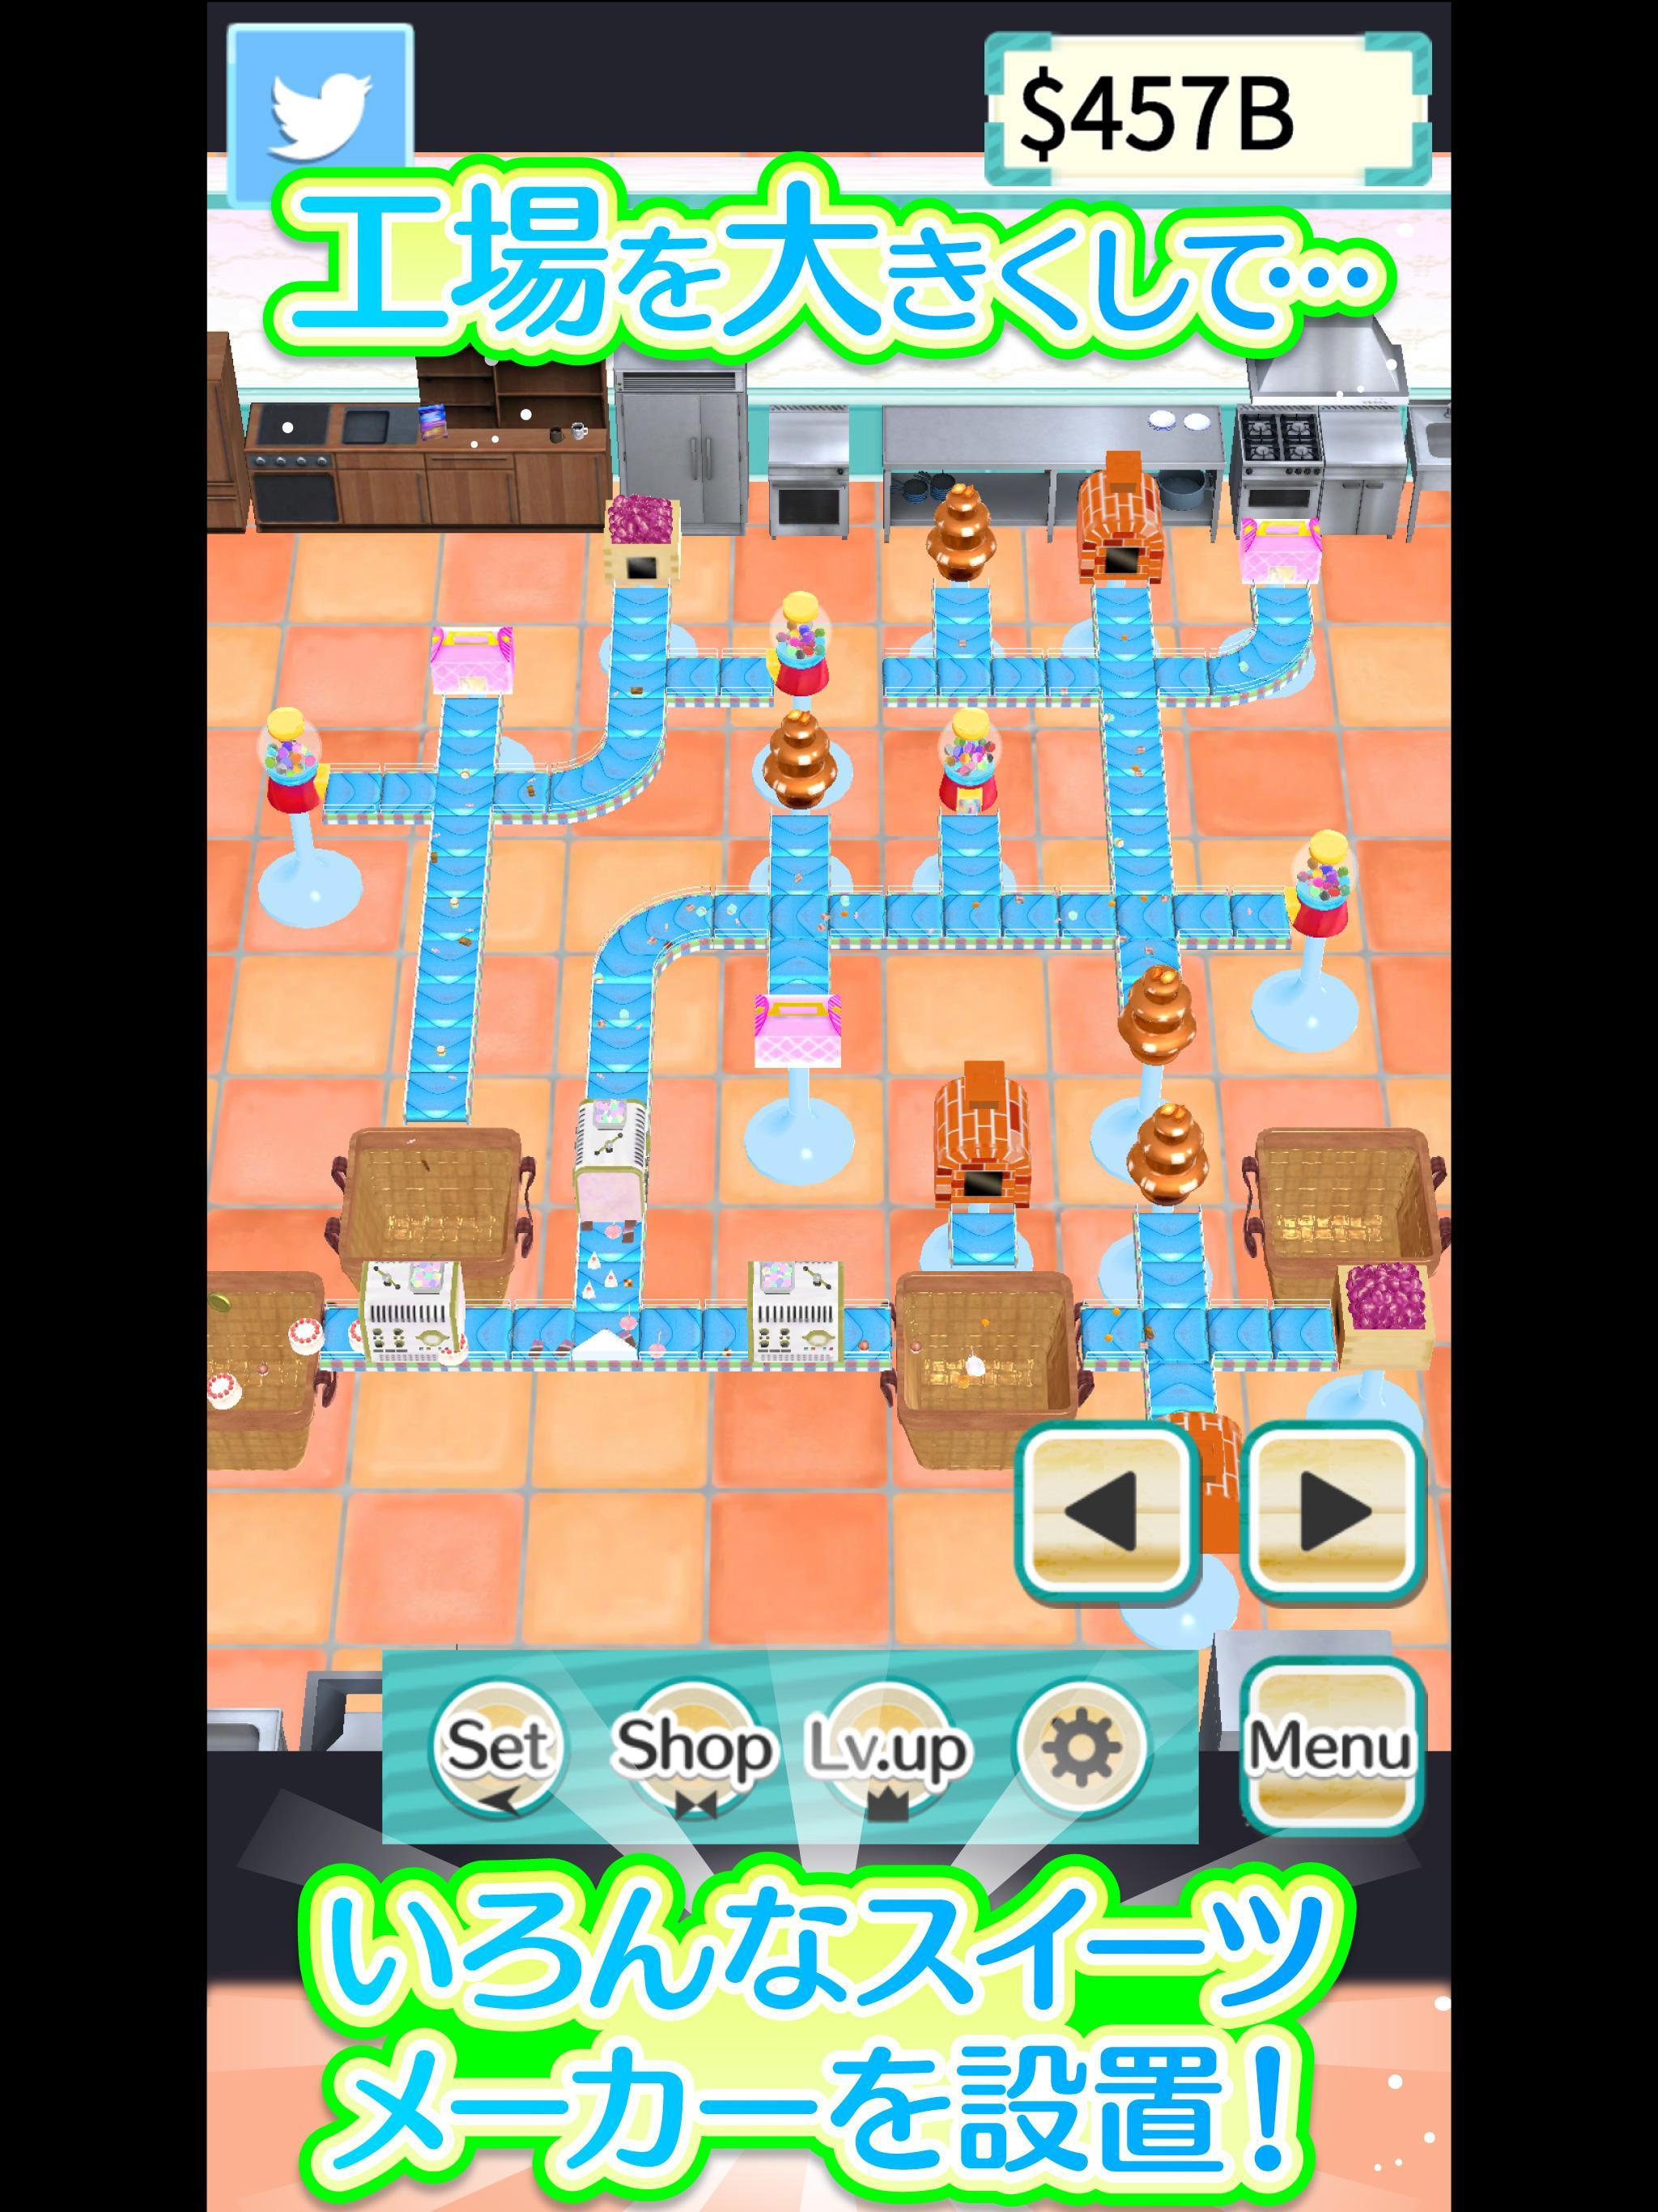 お菓子作り スイーツ工場 無料の工場ゲーム For Android Apk Download